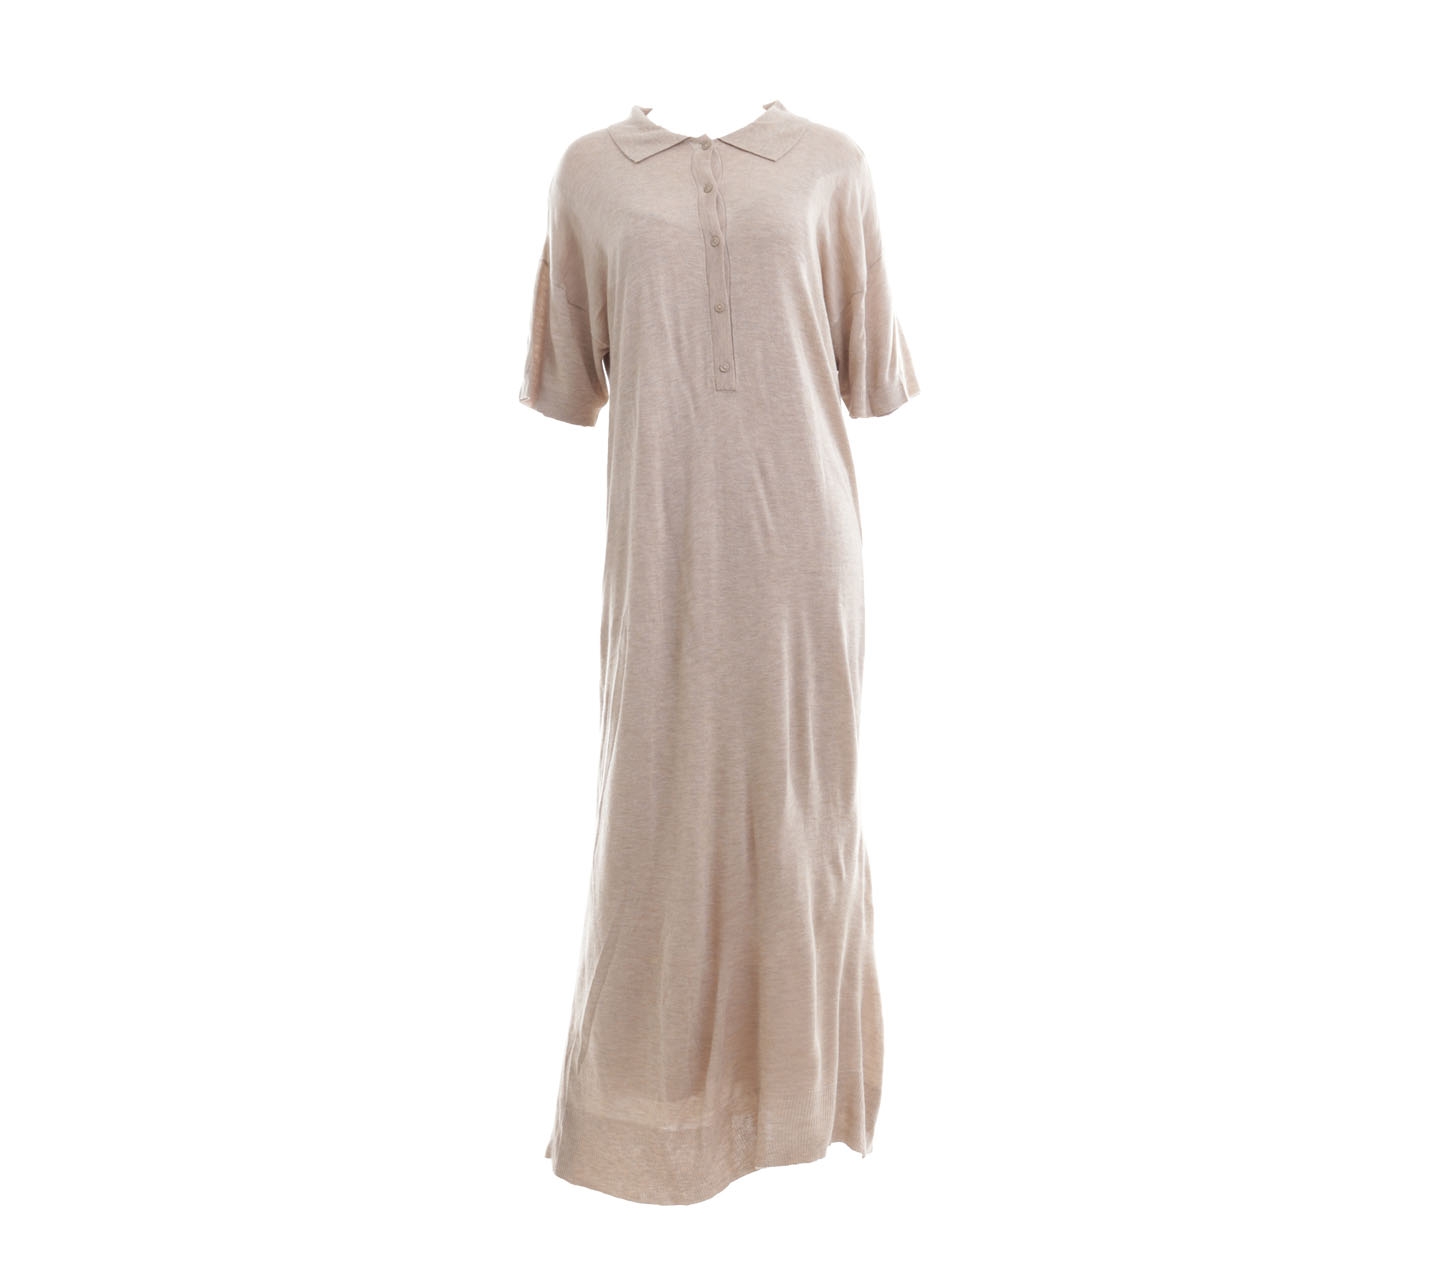 Zara Beige Knit Long Dress